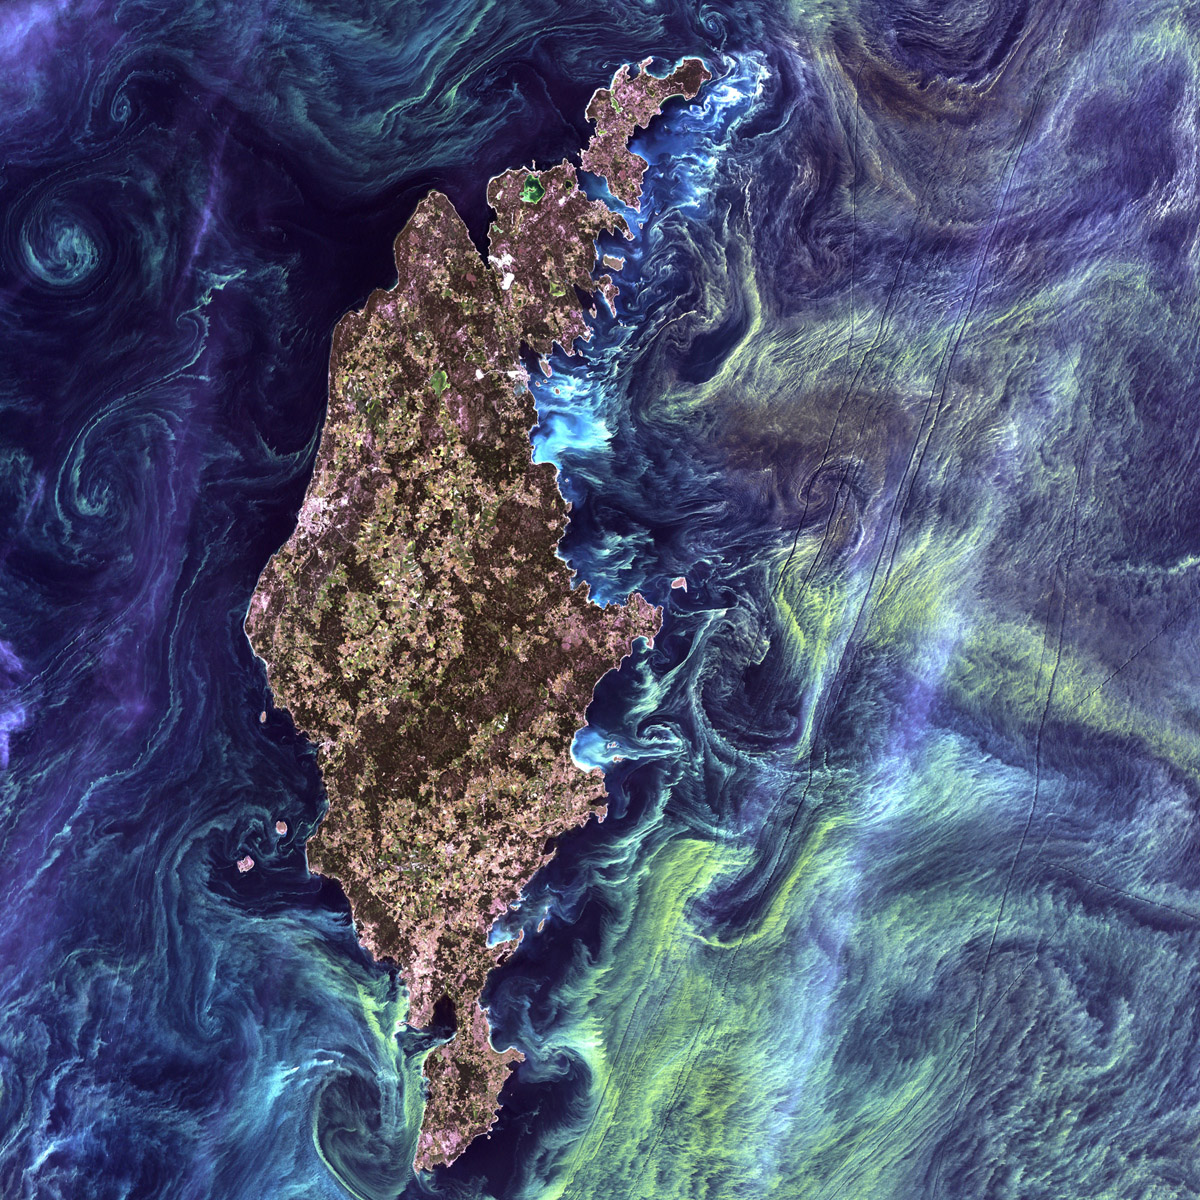 Natura niczym Van Gogh. Ogromne skupiska zielonkawego fitoplankoru wirują wokół Gotlandii, przypominając słynną "Gwiaździsta noc" (F. USGS on Unsplash).